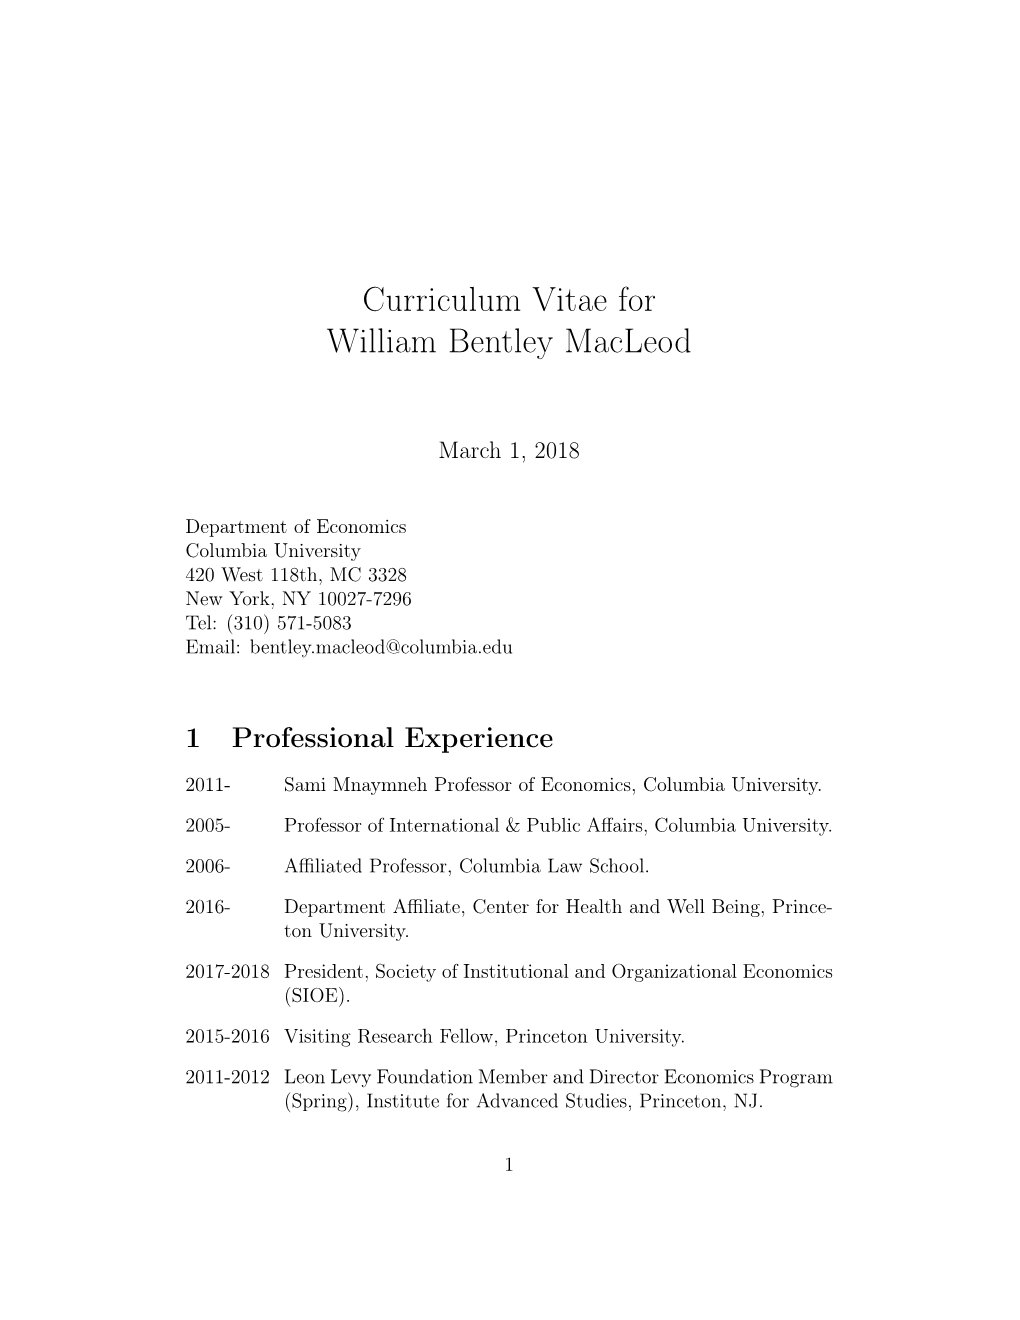 Curriculum Vitae for William Bentley Macleod